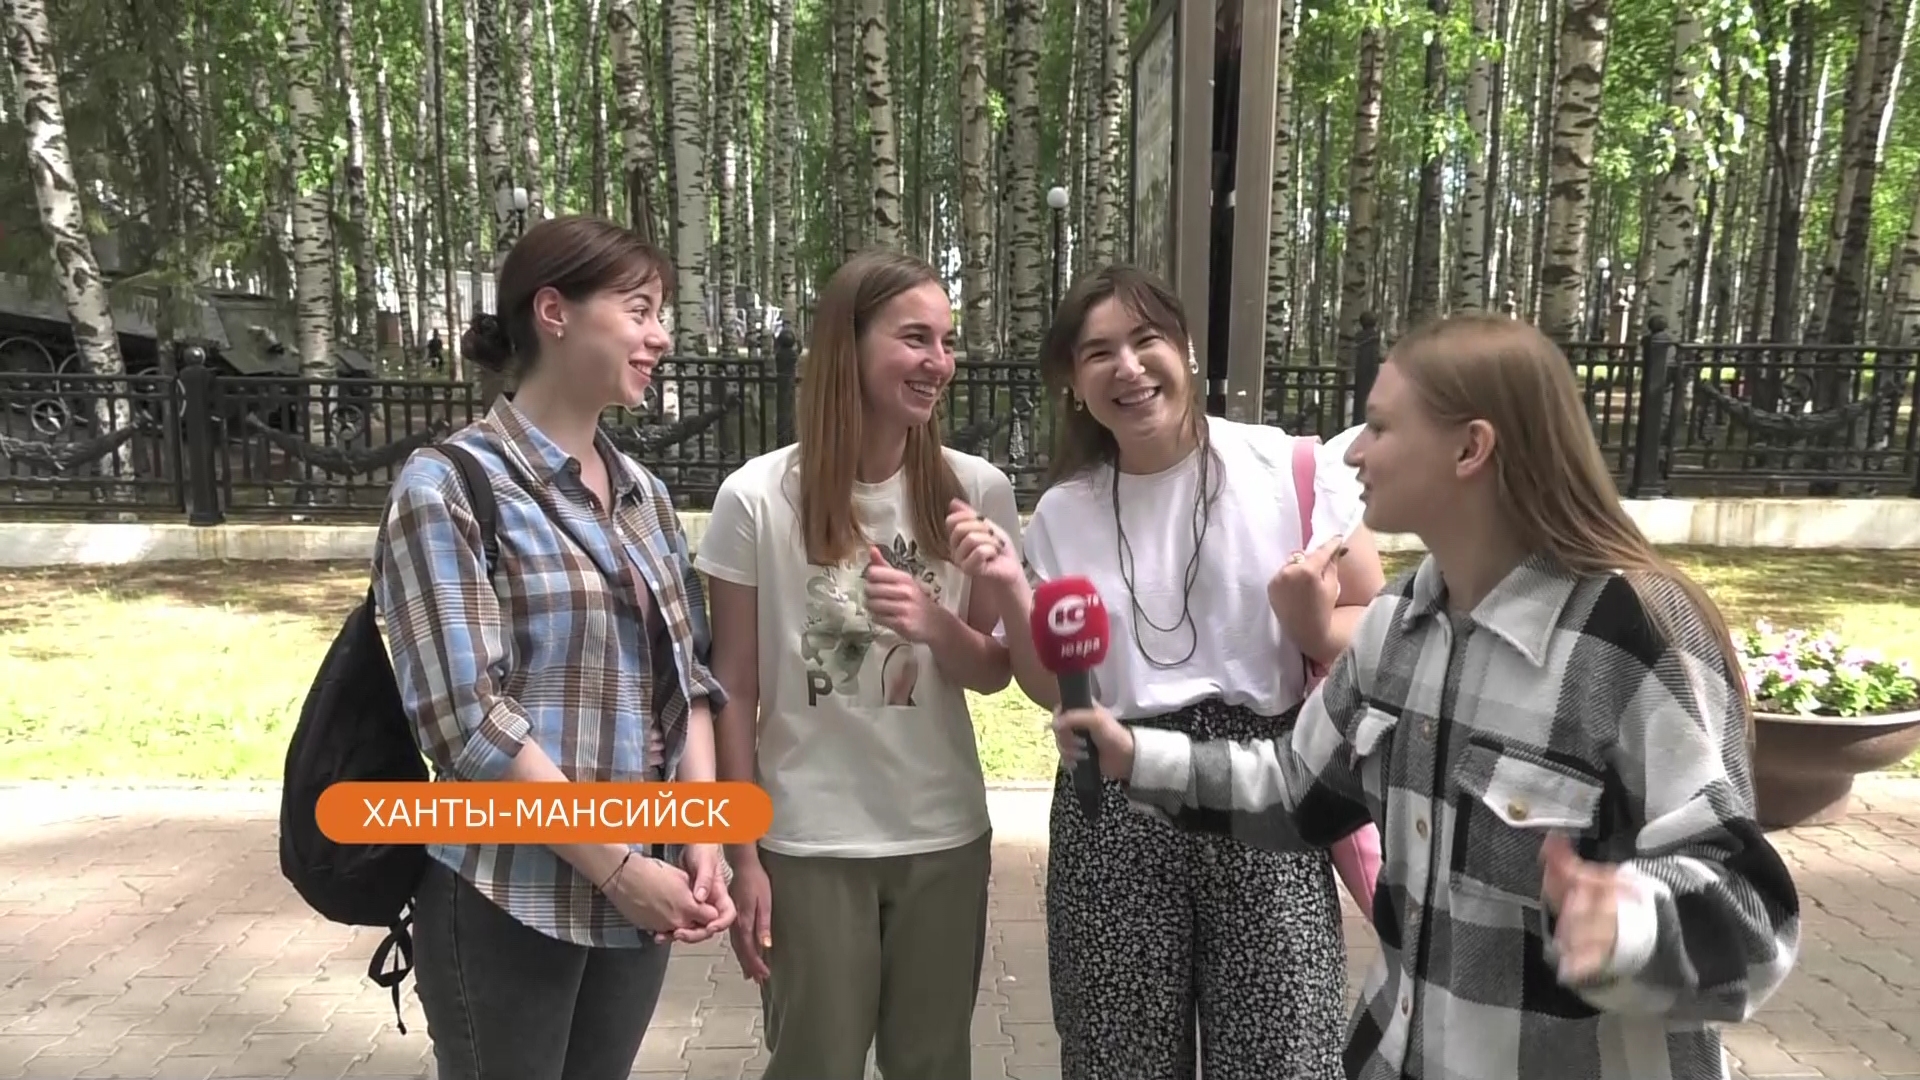 Что делает счастливыми жителей Ханты-Мансийска